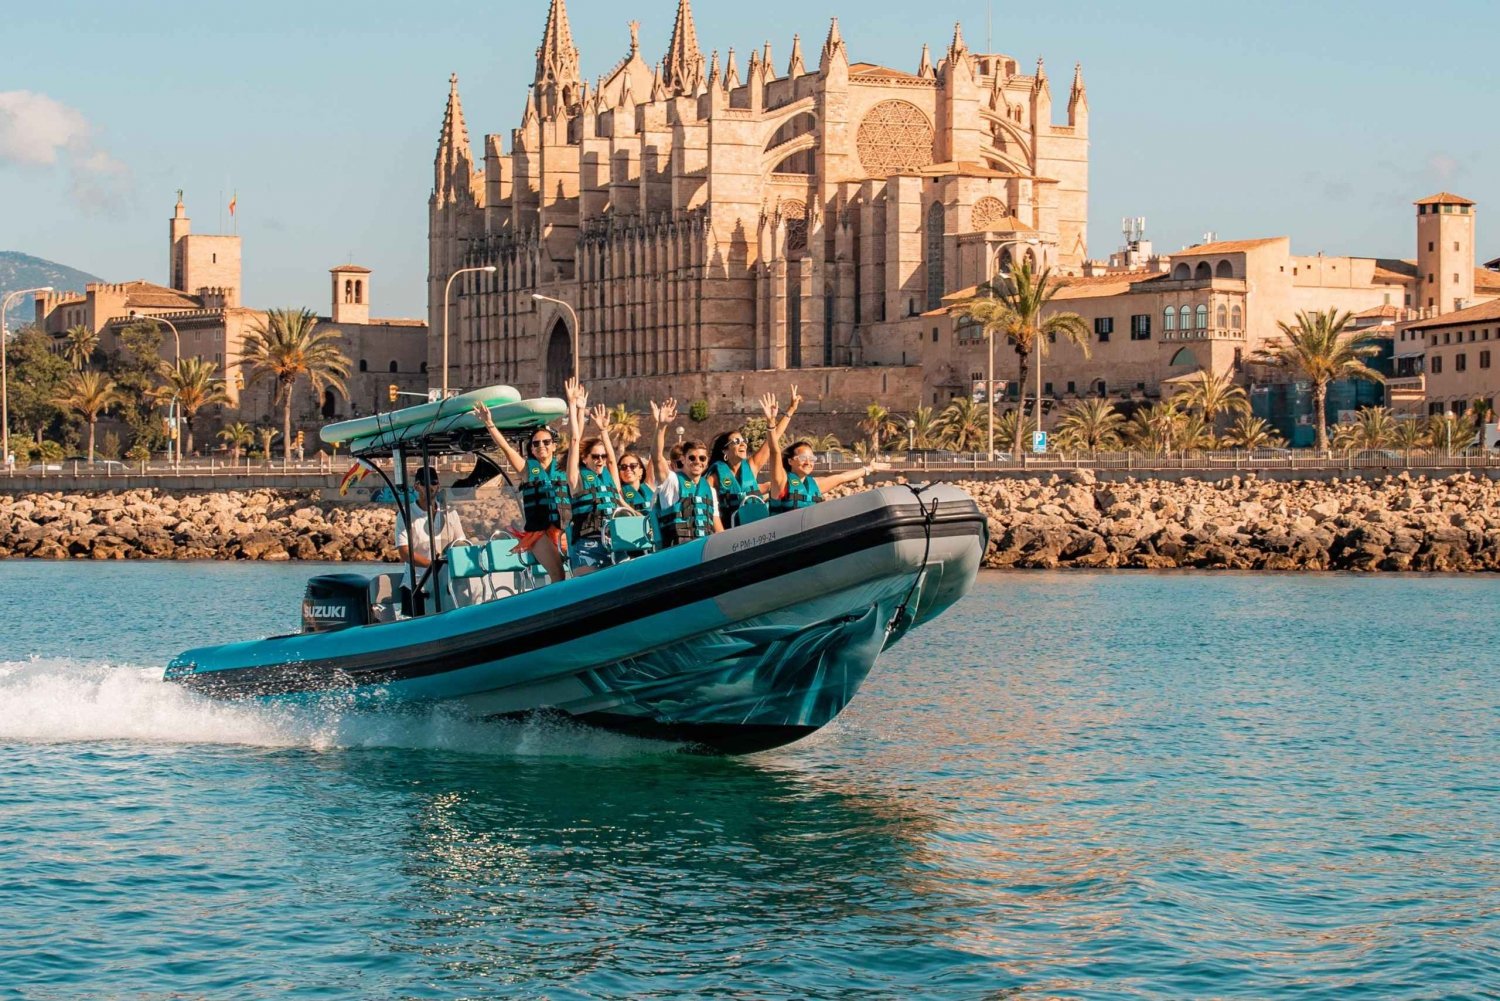 2 timer med hurtigbåt med returreise i Puerto Club de Mar